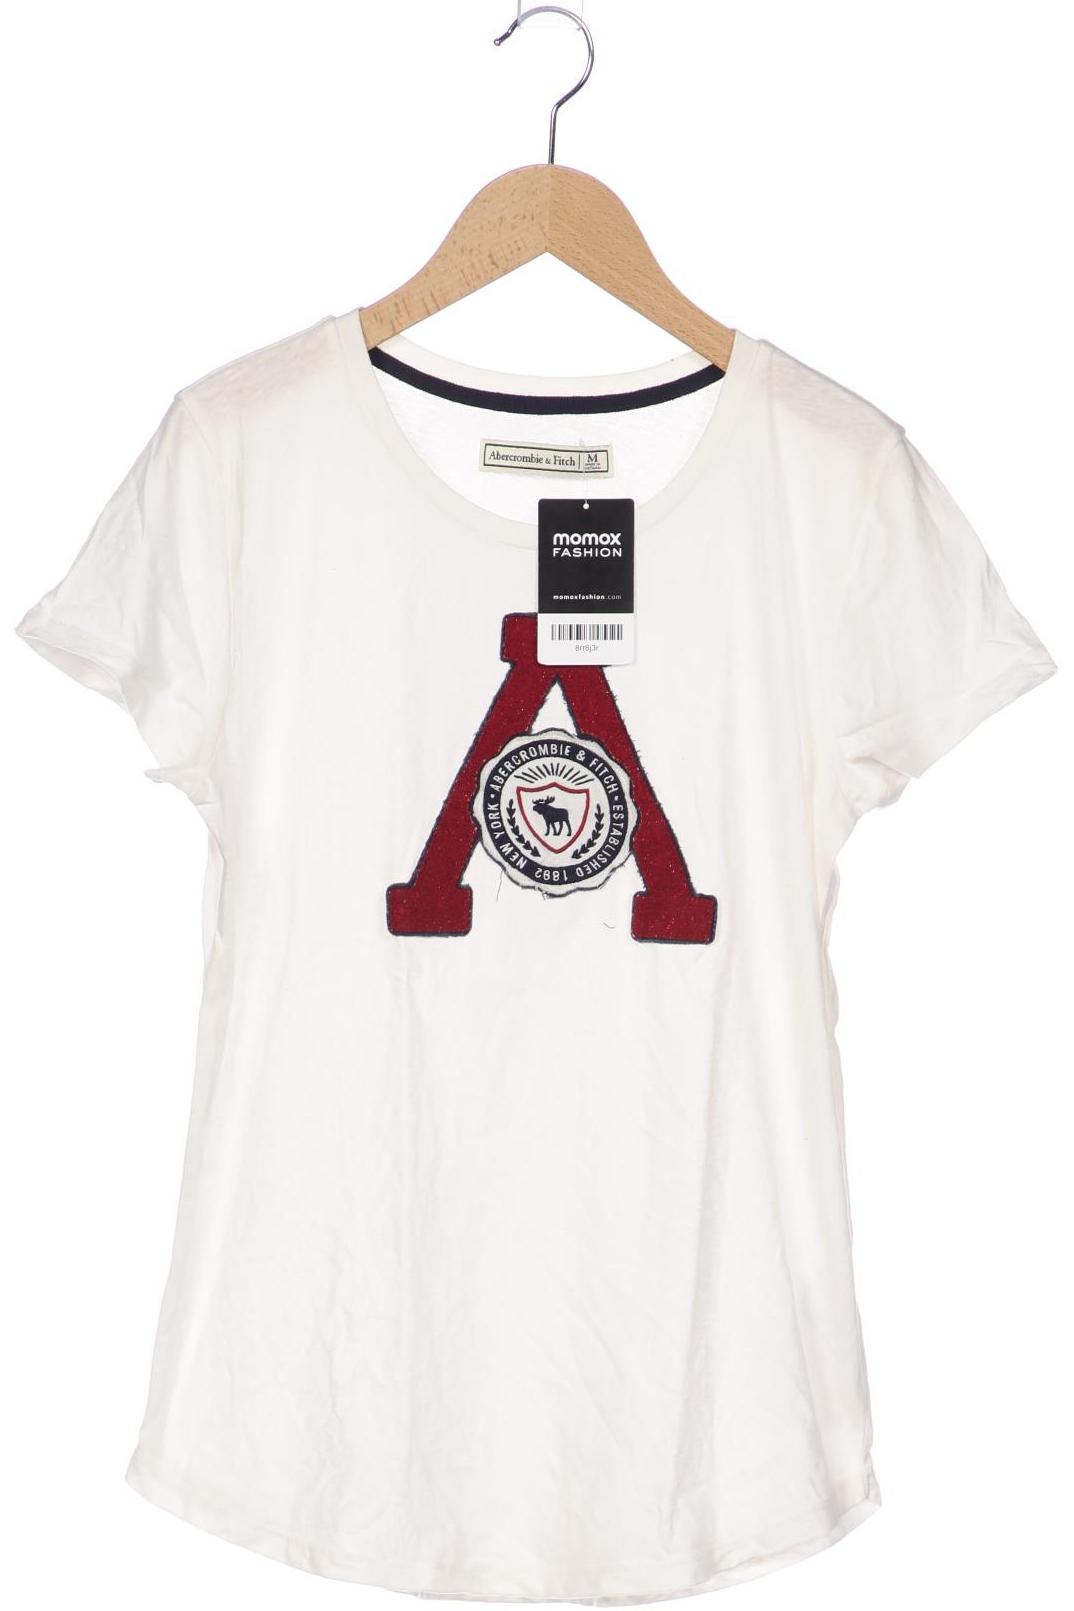 Abercrombie & Fitch Damen T-Shirt, weiß, Gr. 38 von Abercrombie & Fitch